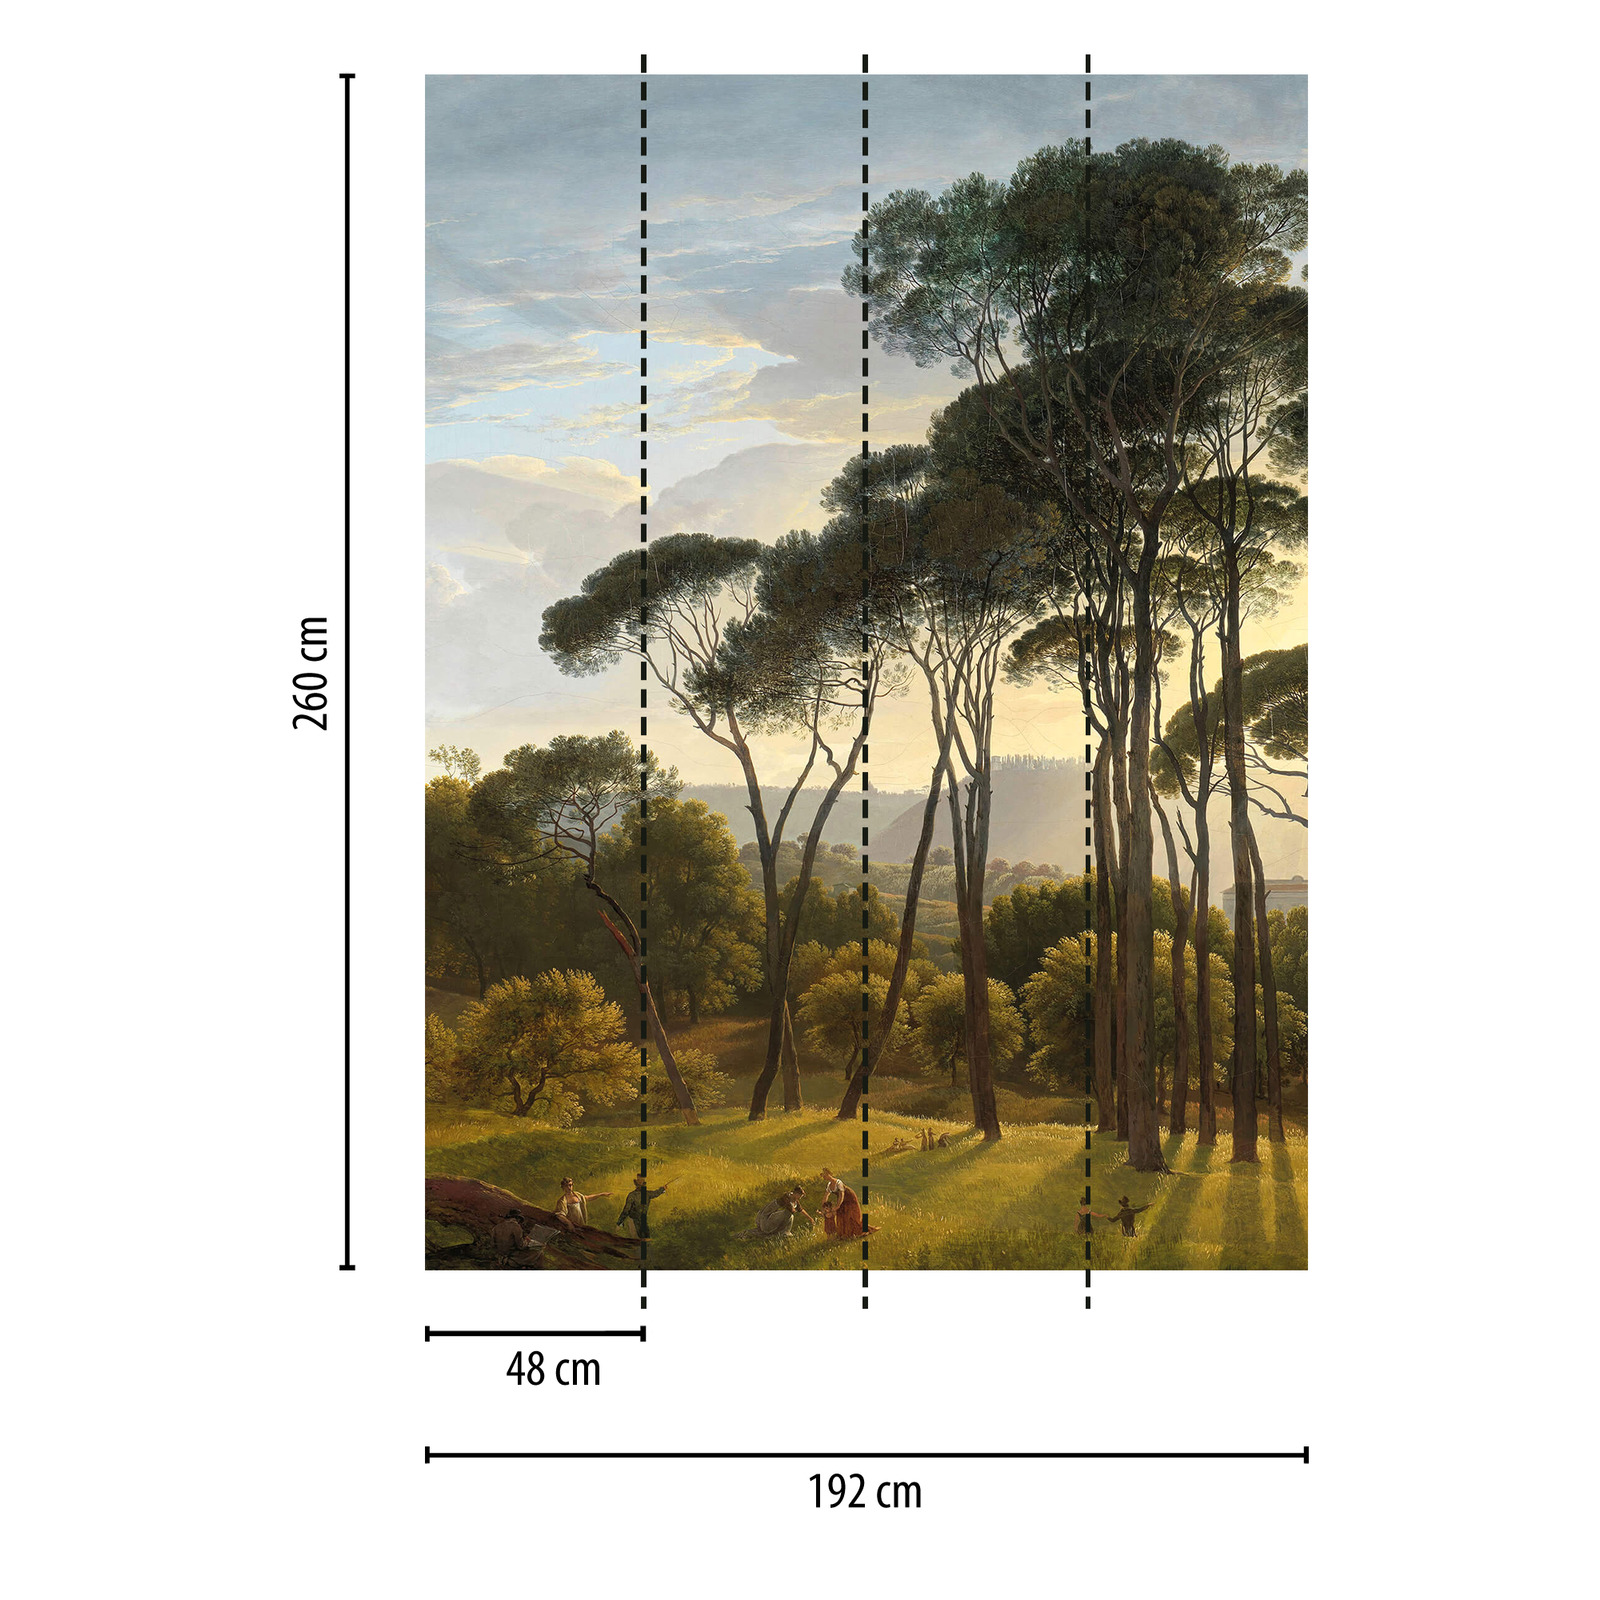             Fotomurali Paesaggio con alberi - Verde, Marrone, Grigio
        